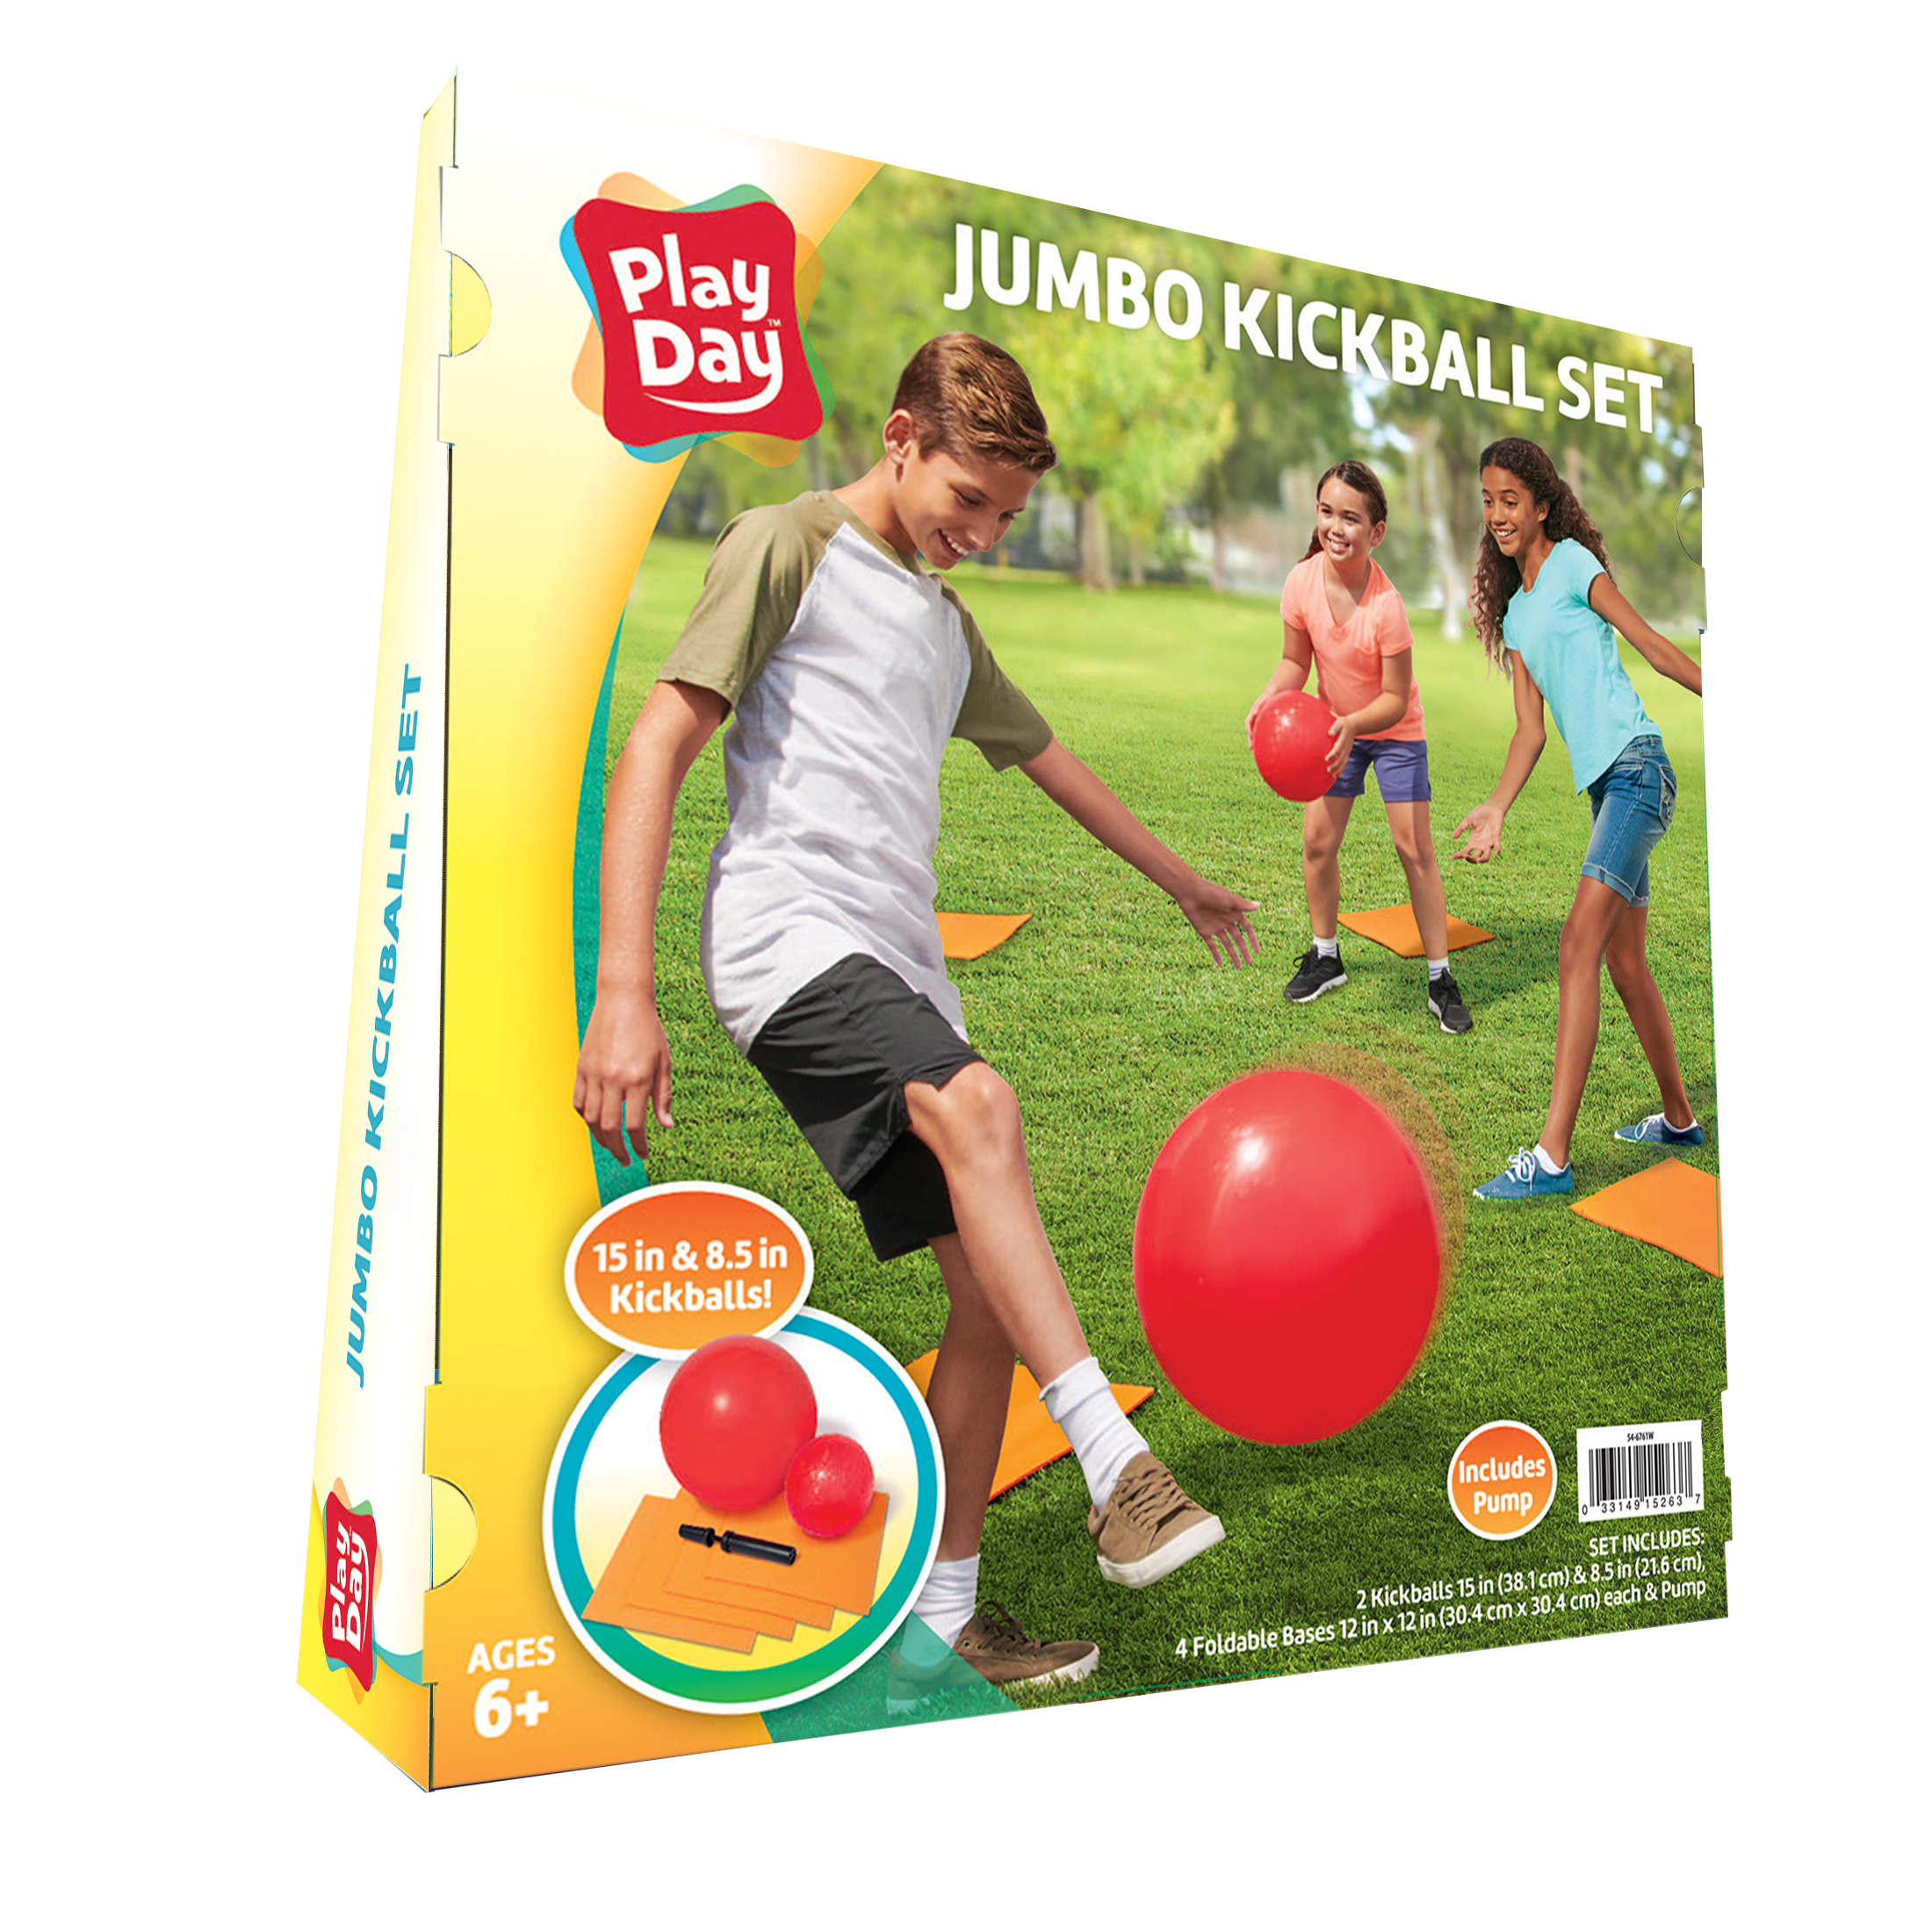 Play Day Jumbo Kickball Set, 7 Pieces - image 4 of 7